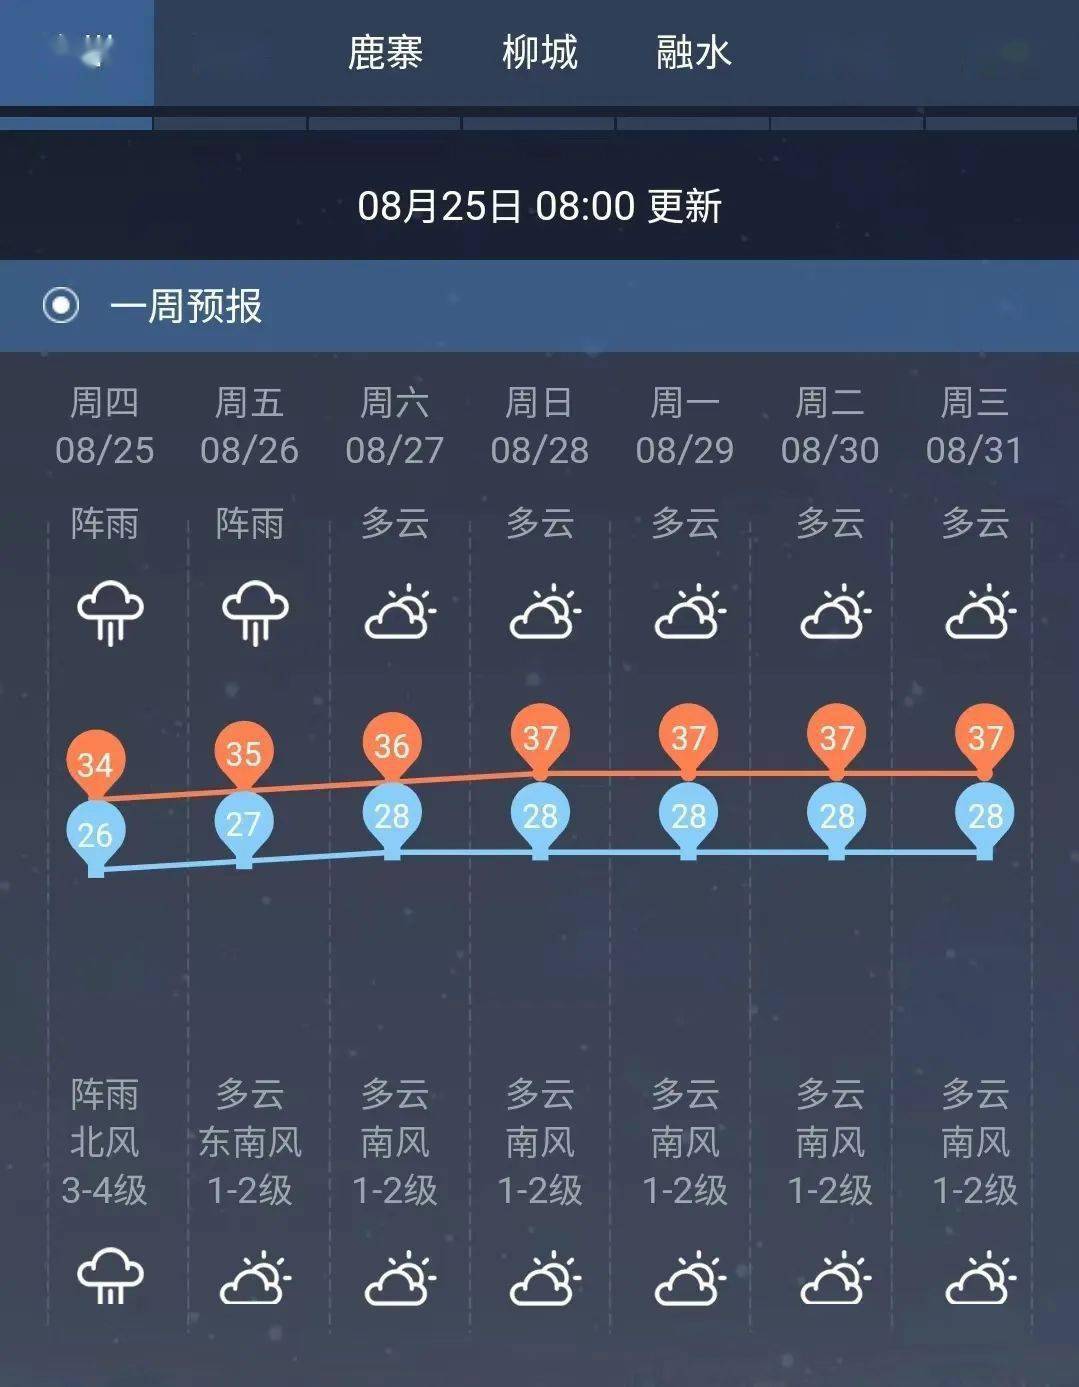 "马鞍"今天下午到傍晚进入广西将带来强风暴雨